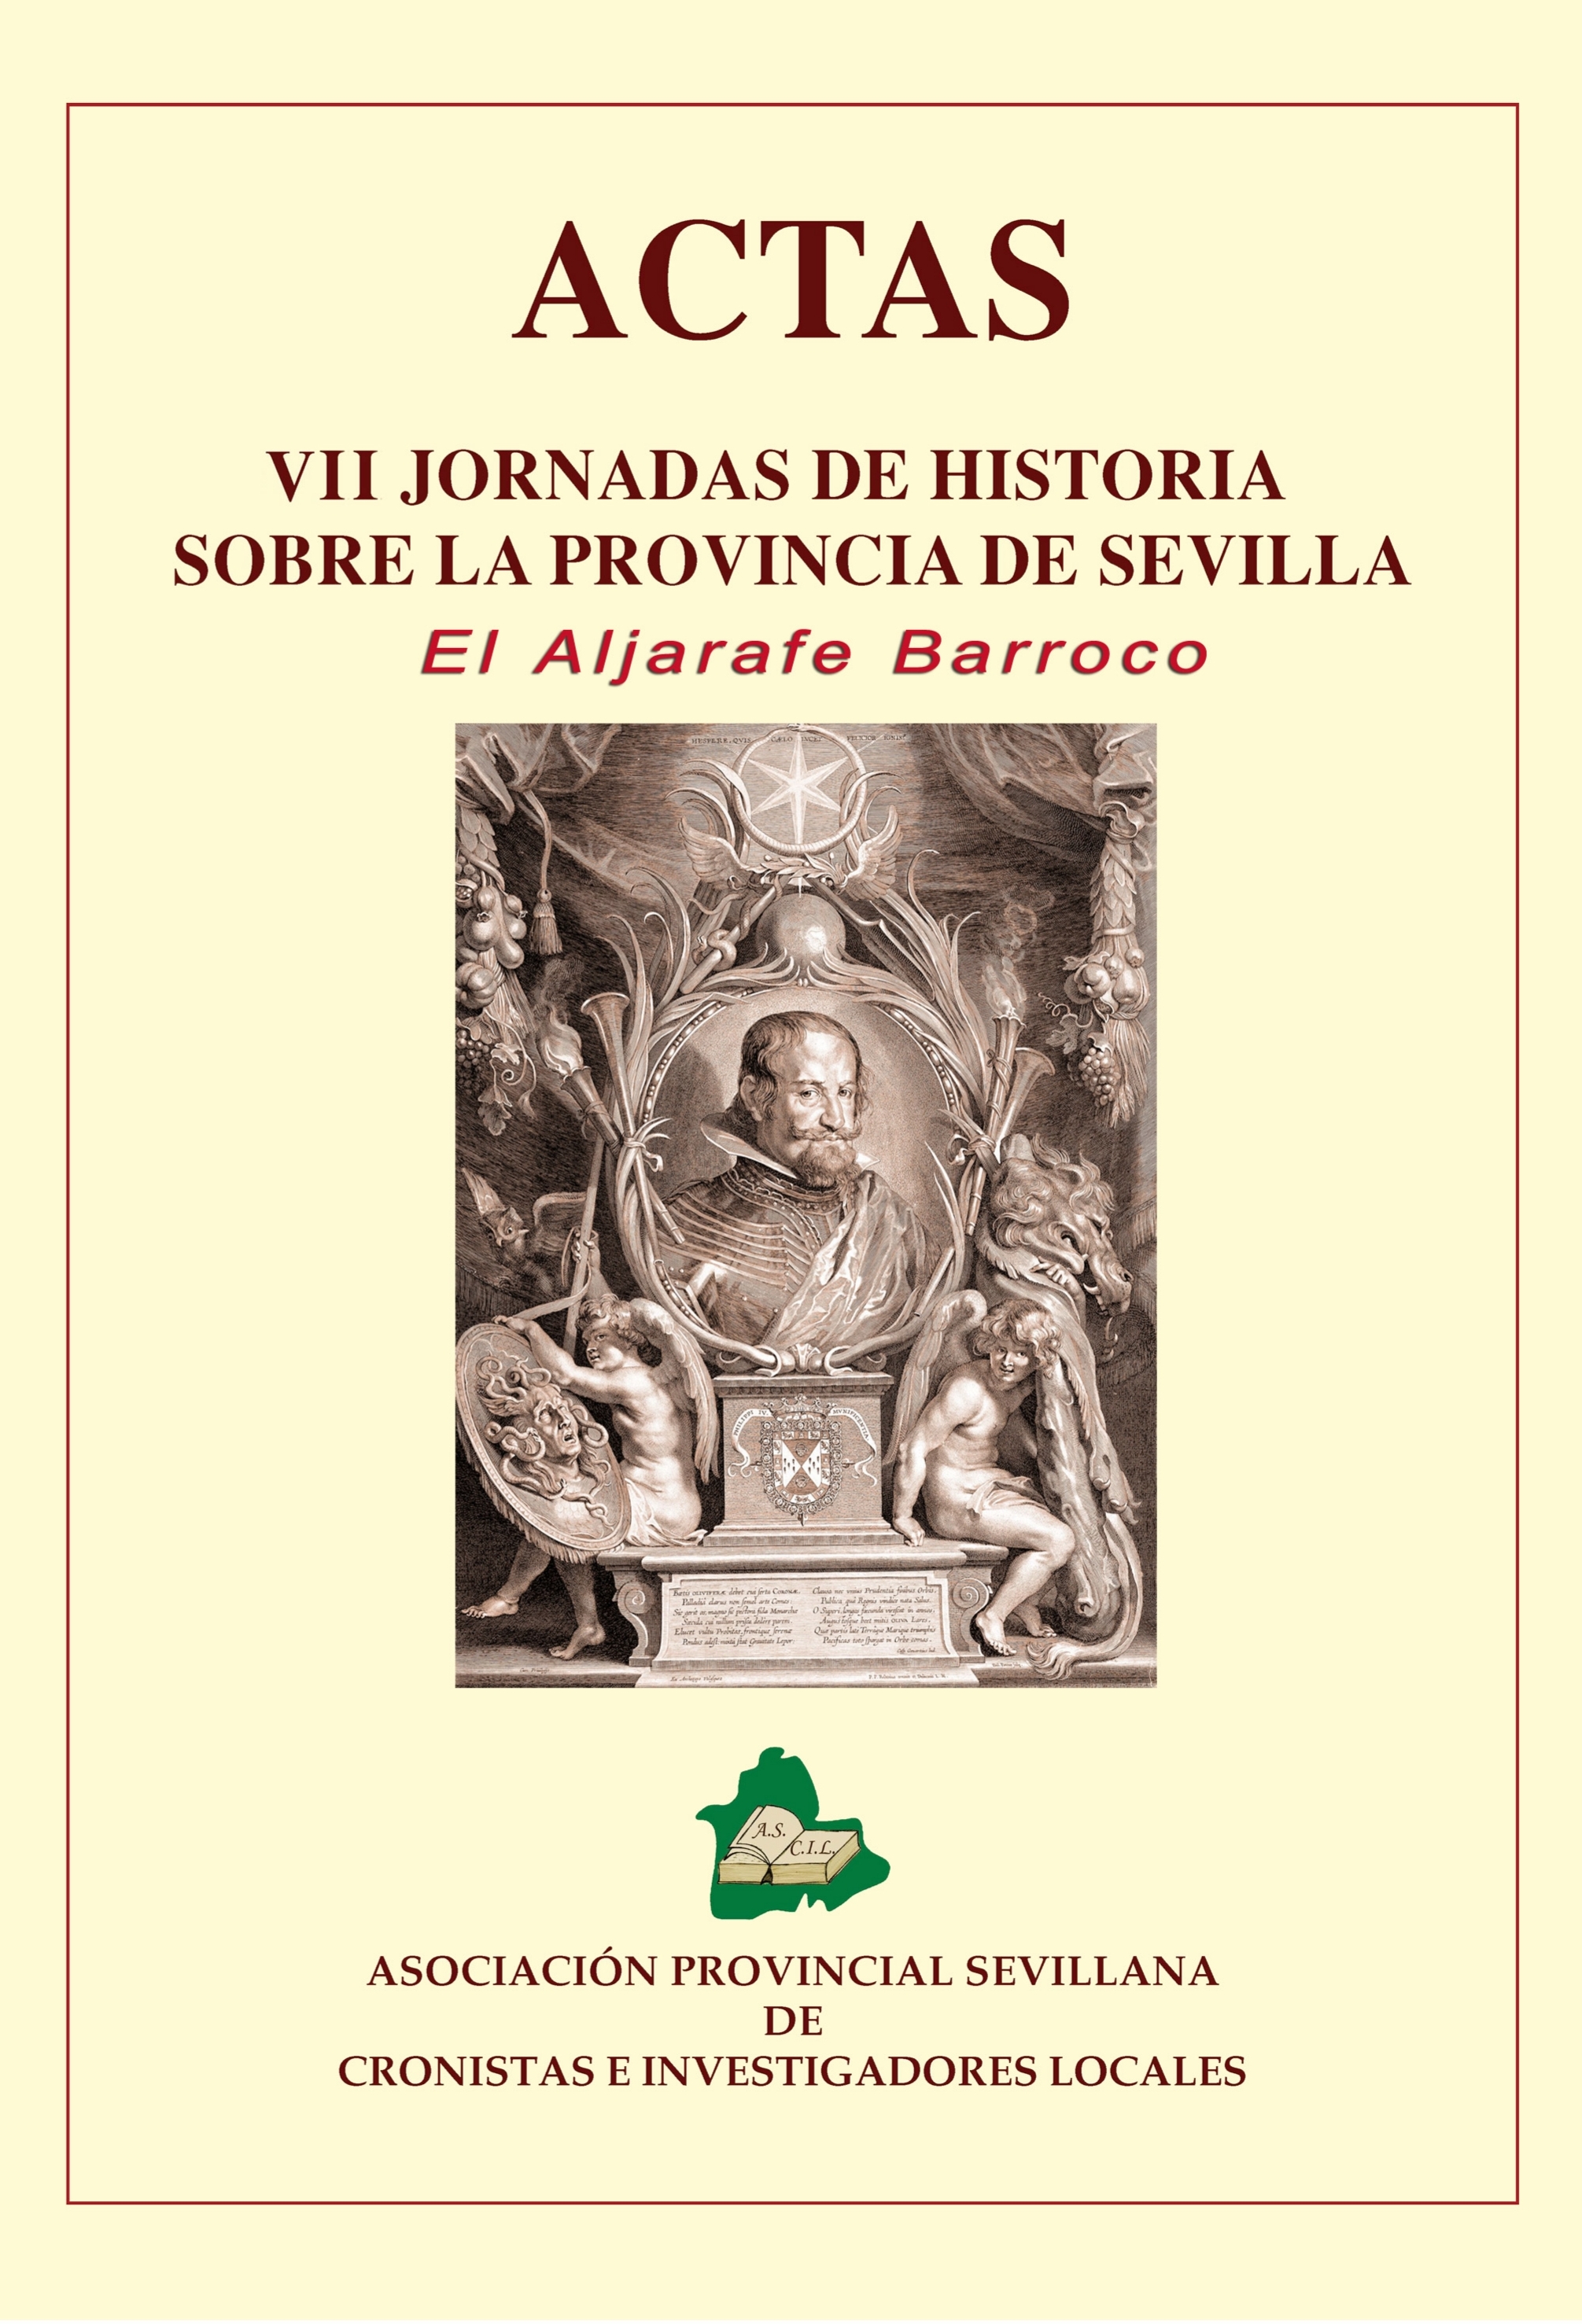 Imagen de portada del libro El Aljarafe Barroco